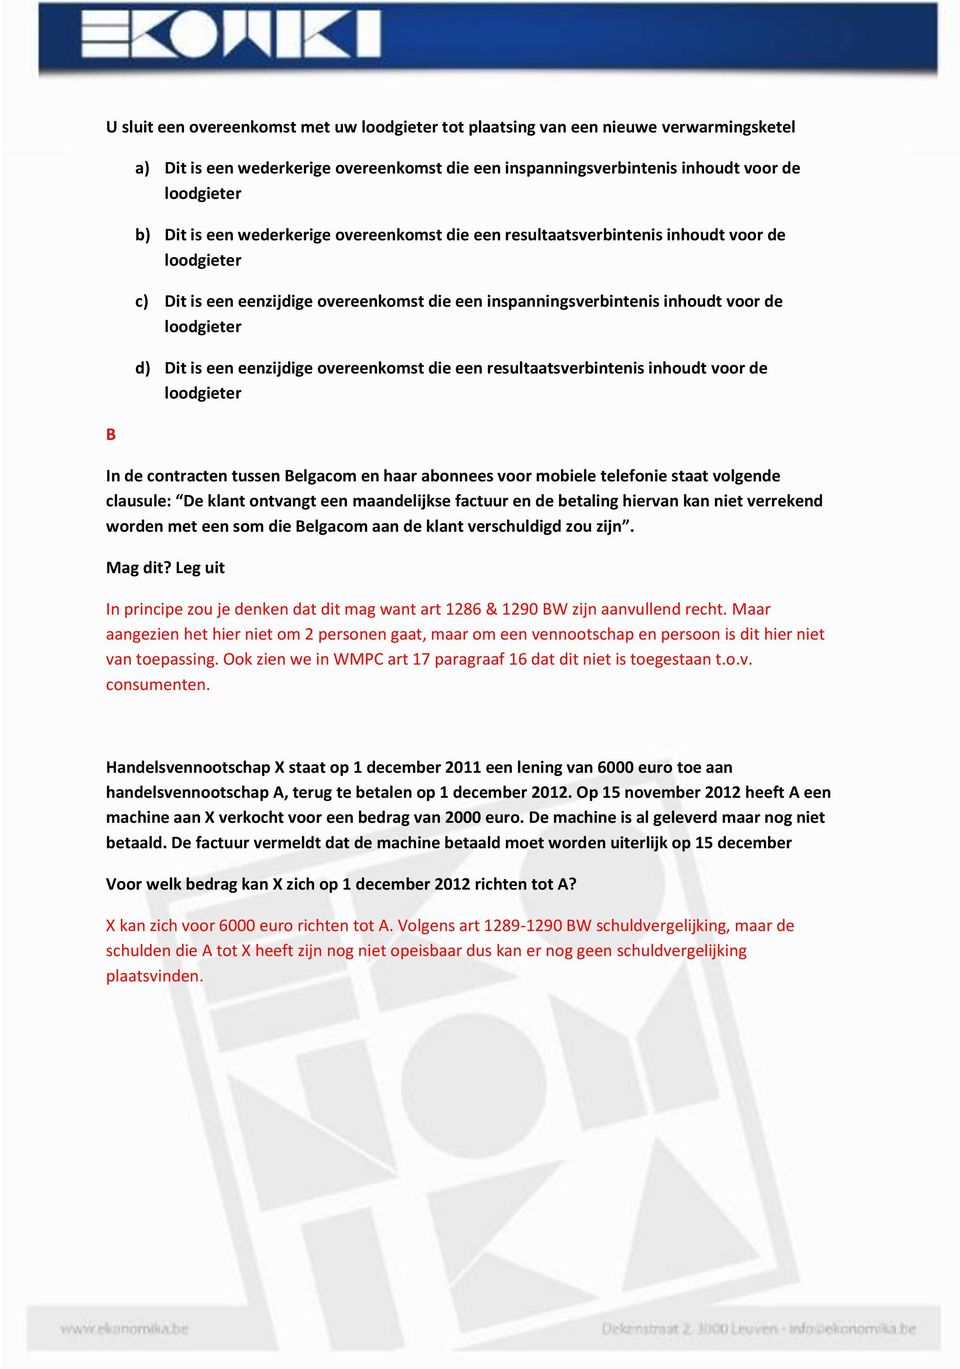 eenzijdige overeenkomst die een resultaatsverbintenis inhoudt voor de loodgieter In de contracten tussen Belgacom en haar abonnees voor mobiele telefonie staat volgende clausule: De klant ontvangt